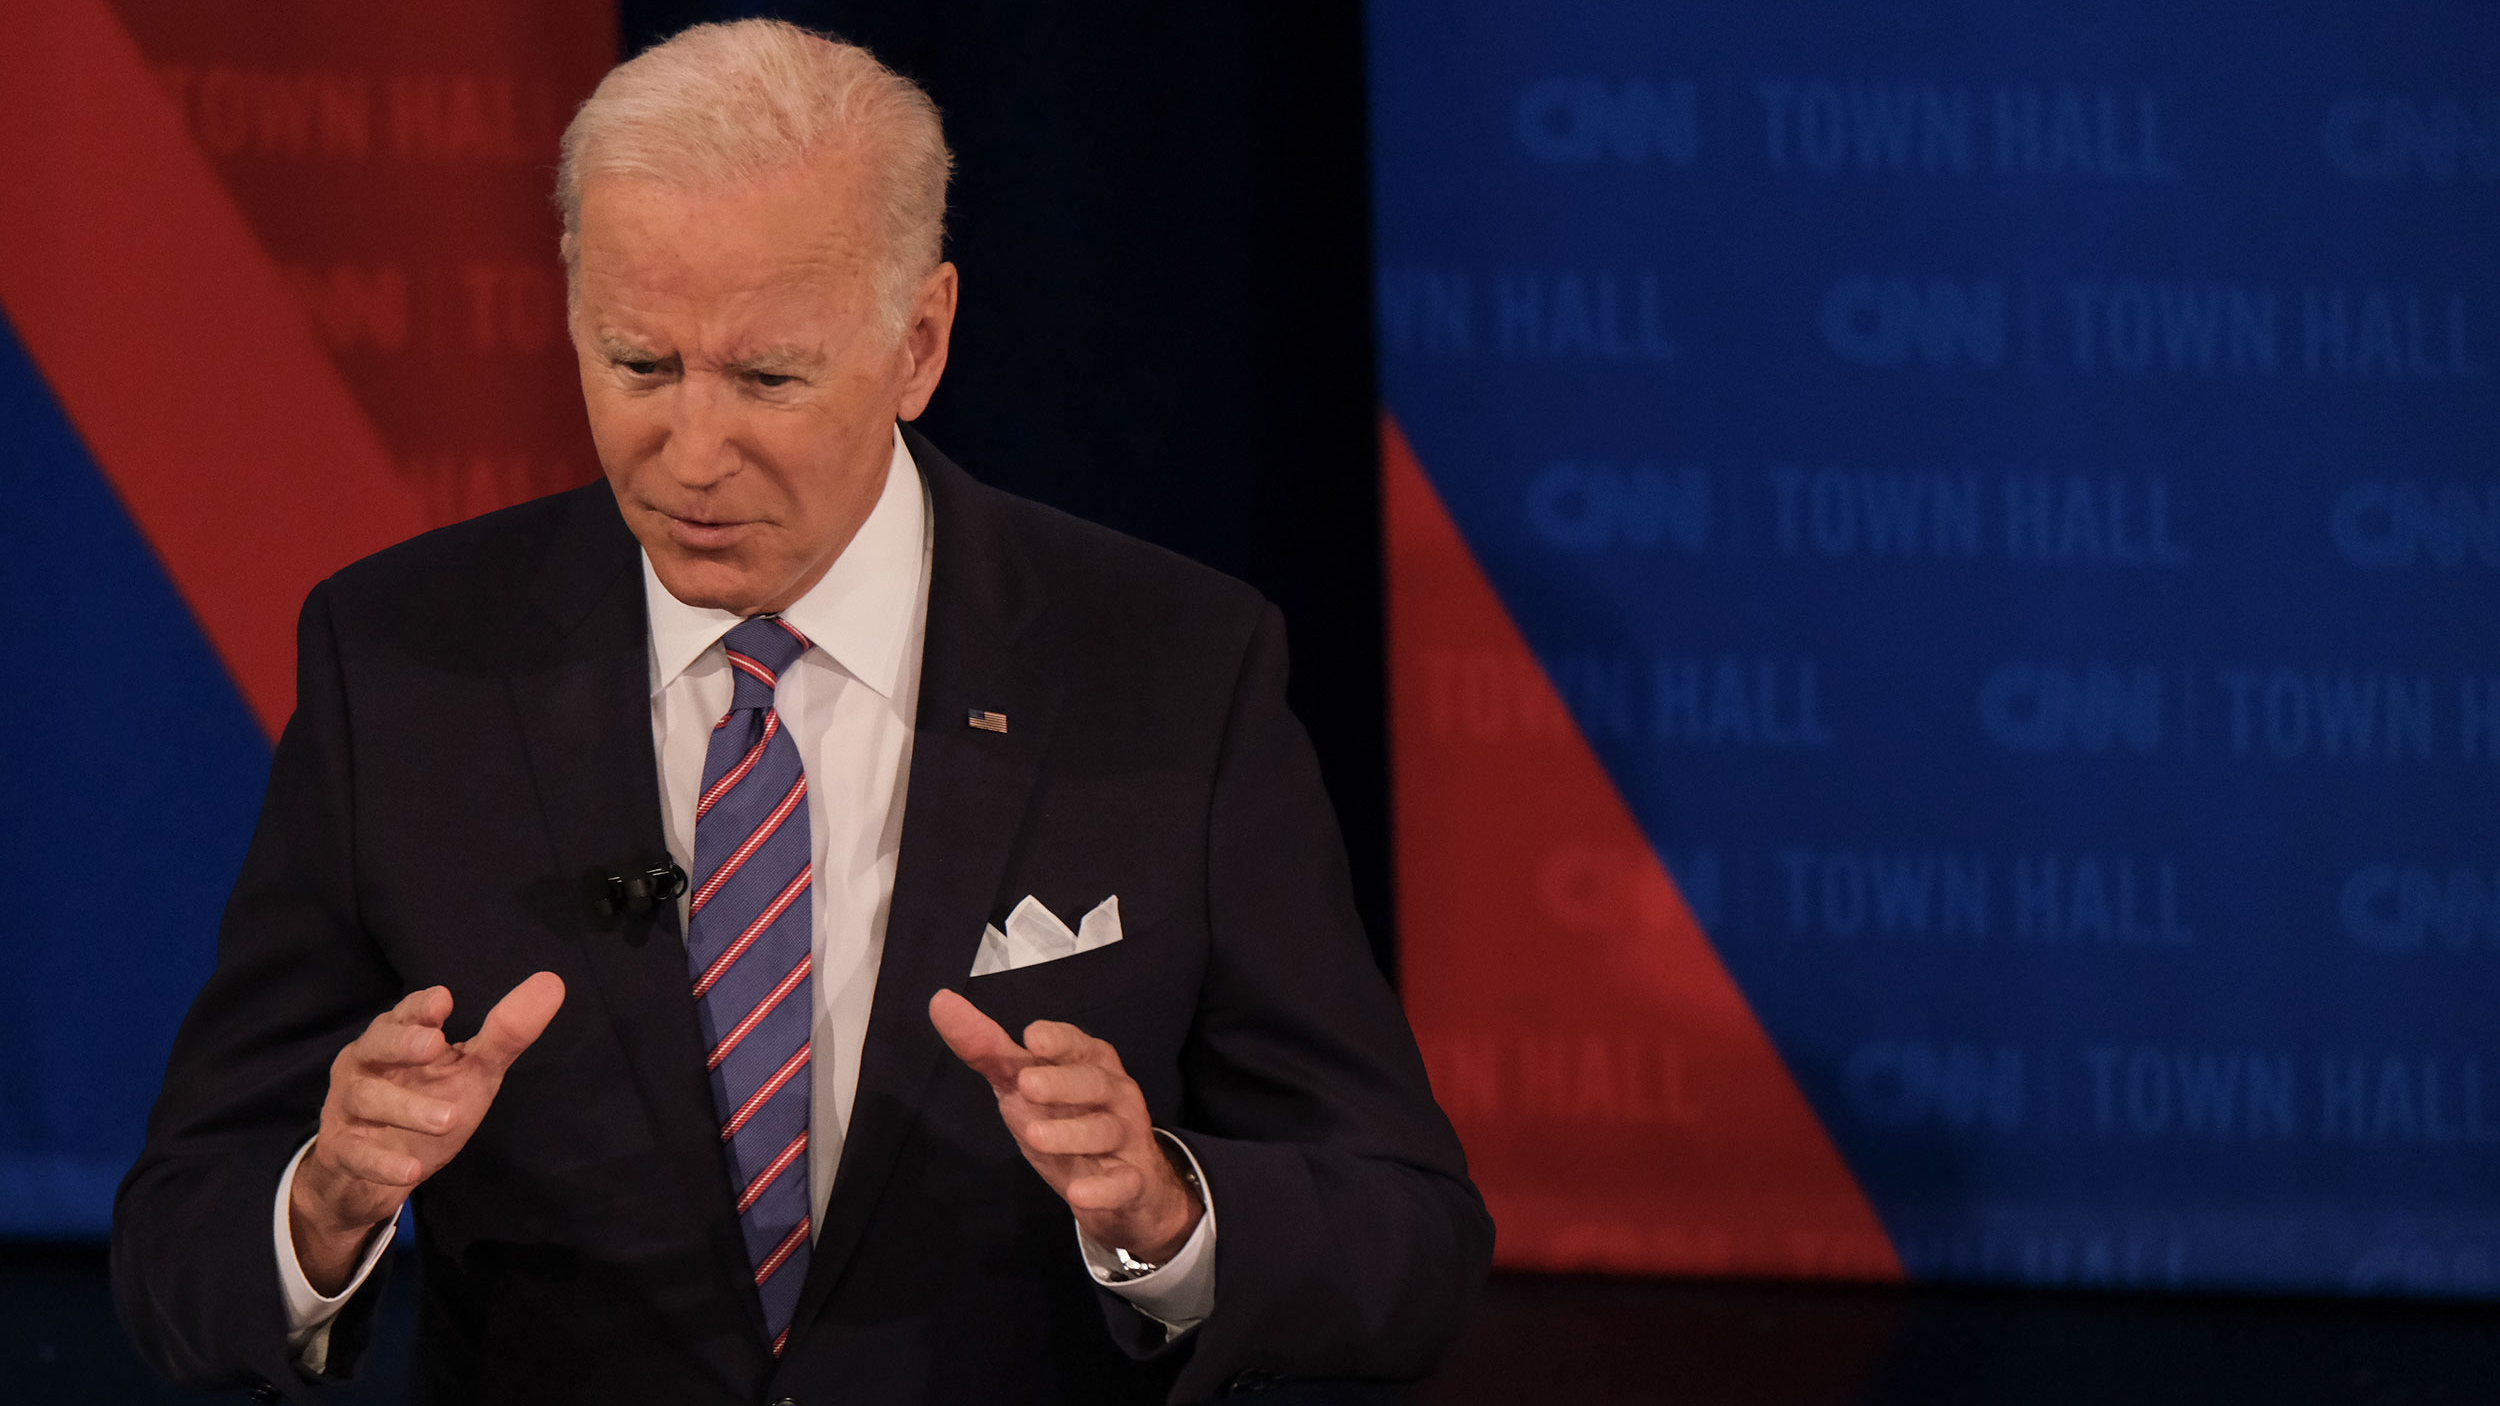 President Joe Biden speaks during CNN's Presidential Town Hall in Baltimore, Maryland, on October 21.